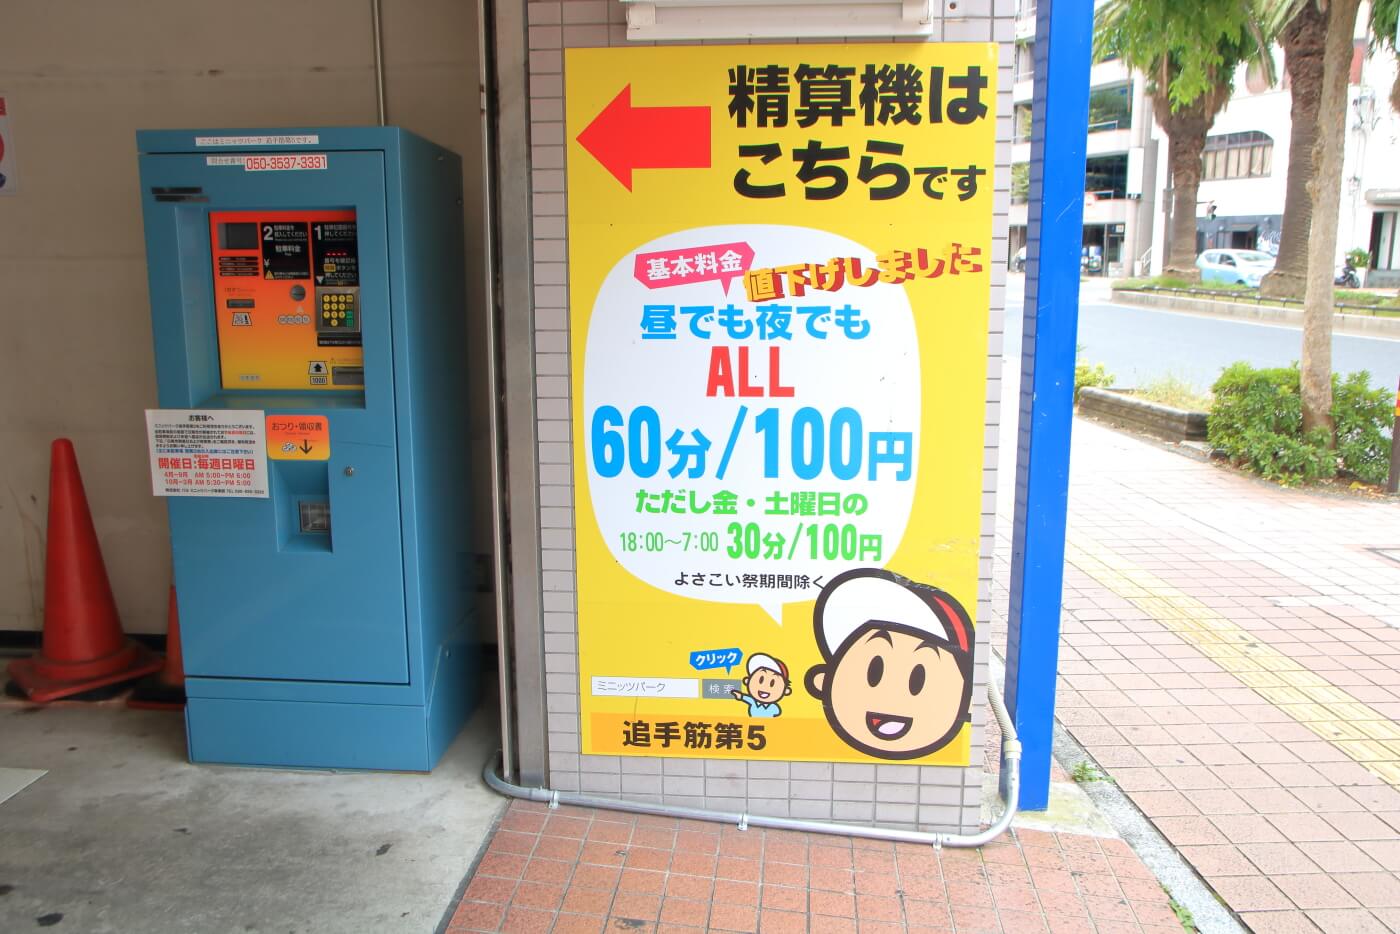 高知市の居酒屋 kataomoi(かたおもい)近隣で駐車料金が安いおすすめ駐車場